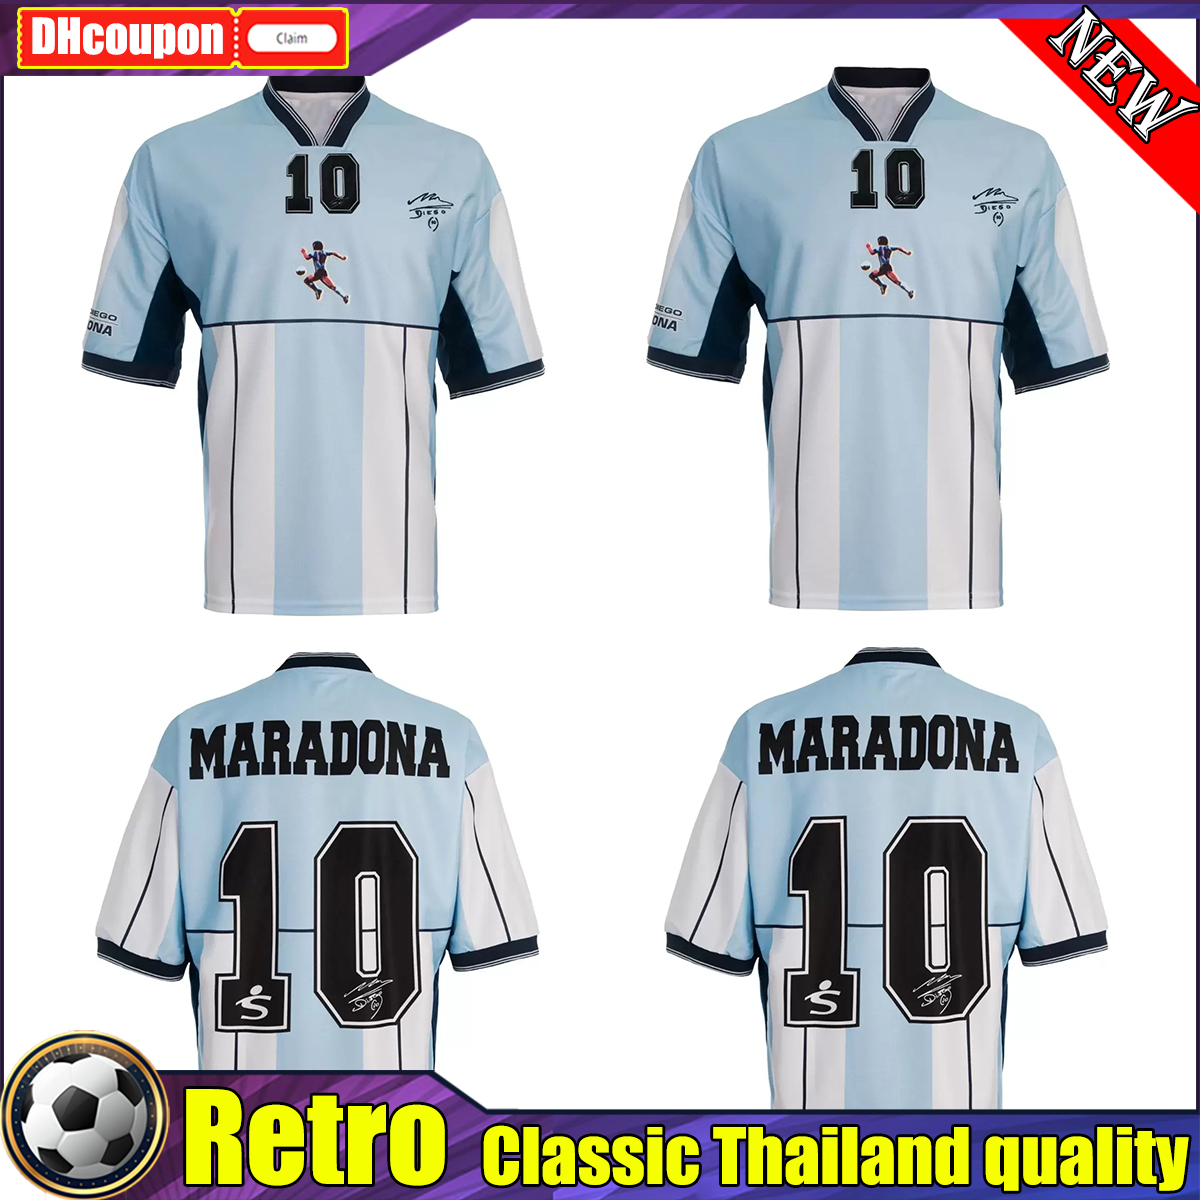 

2001 Argentina Maradona retro Homage soccer jerseys Diego Armando Camiseta Partido Homenaje Diego Maradona Vintage classic football shirt Camisetas De Futbol, 01